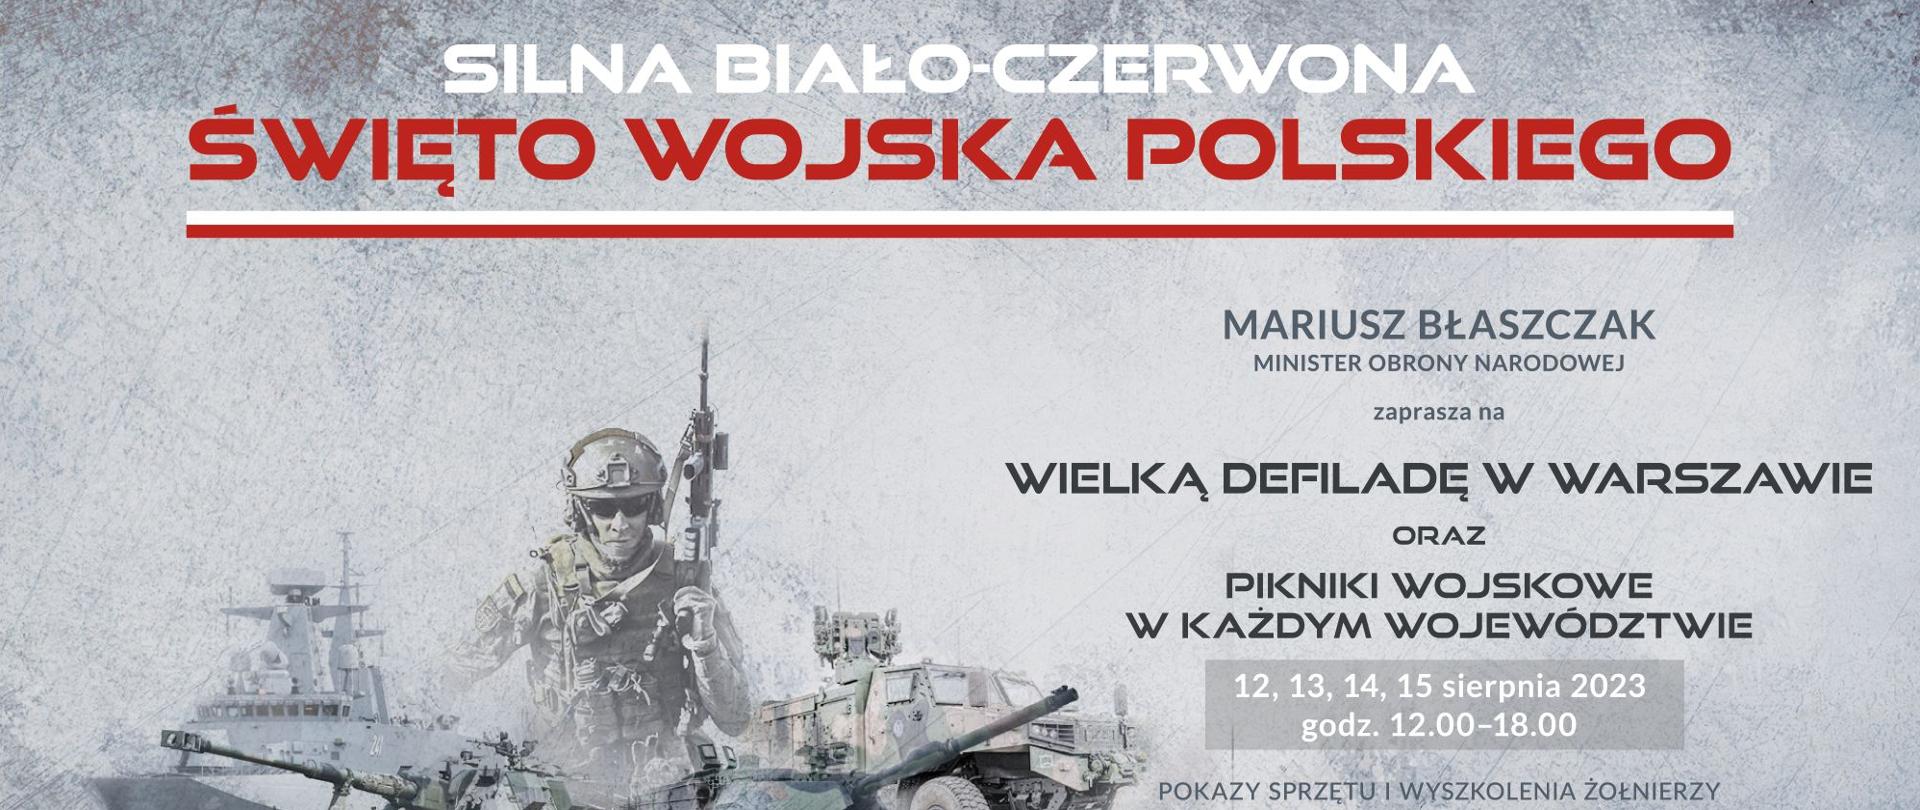 SILNA BIAŁO-CZERWONA – żołnierze zapraszają na Święto Wojska Polskiego